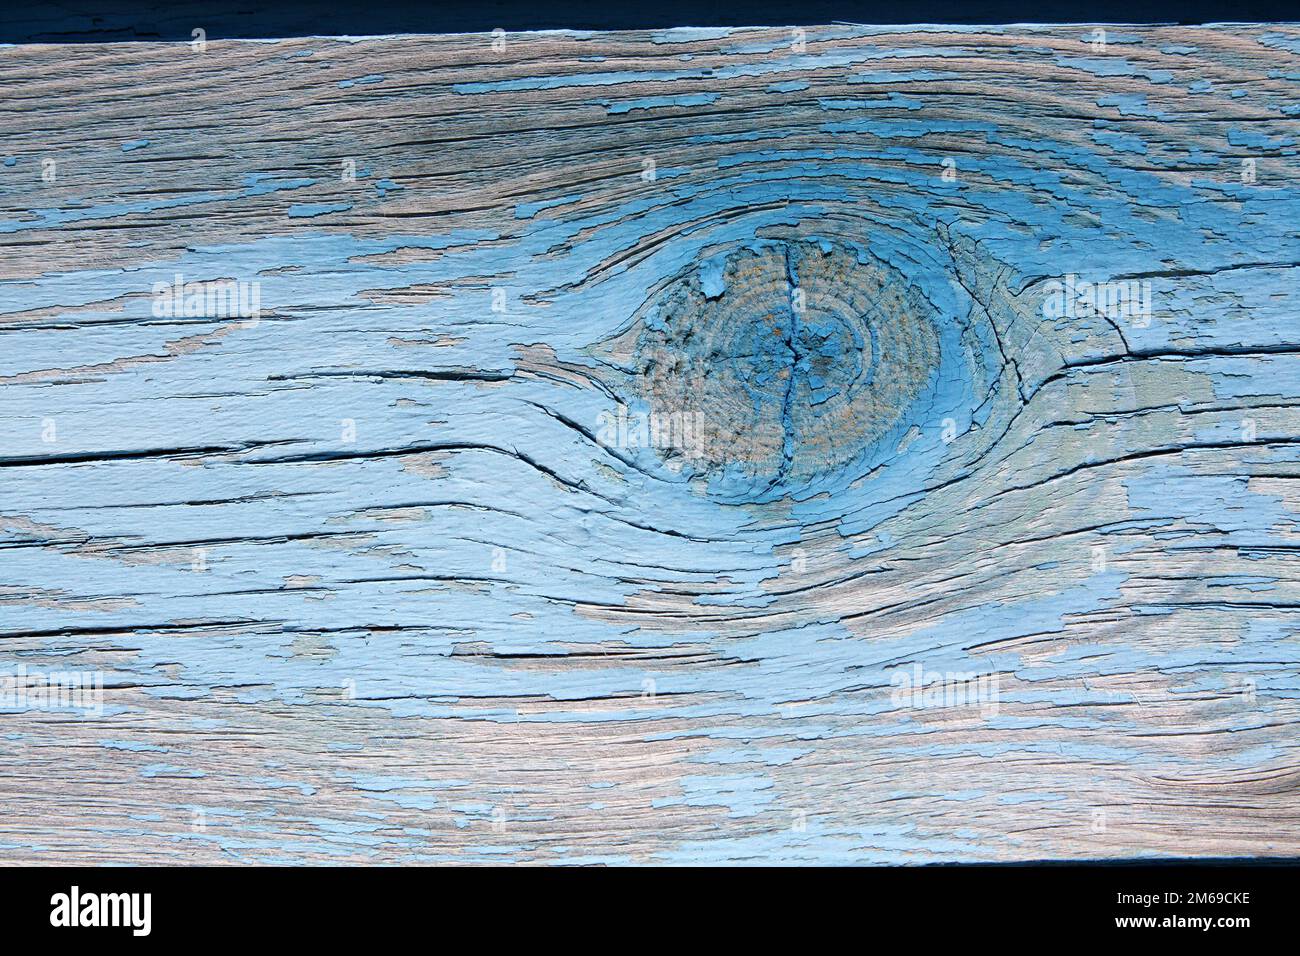 Arrière-plan en bois. Échantillonner les anciennes planches dont les nœuds sont peints en bleu Banque D'Images